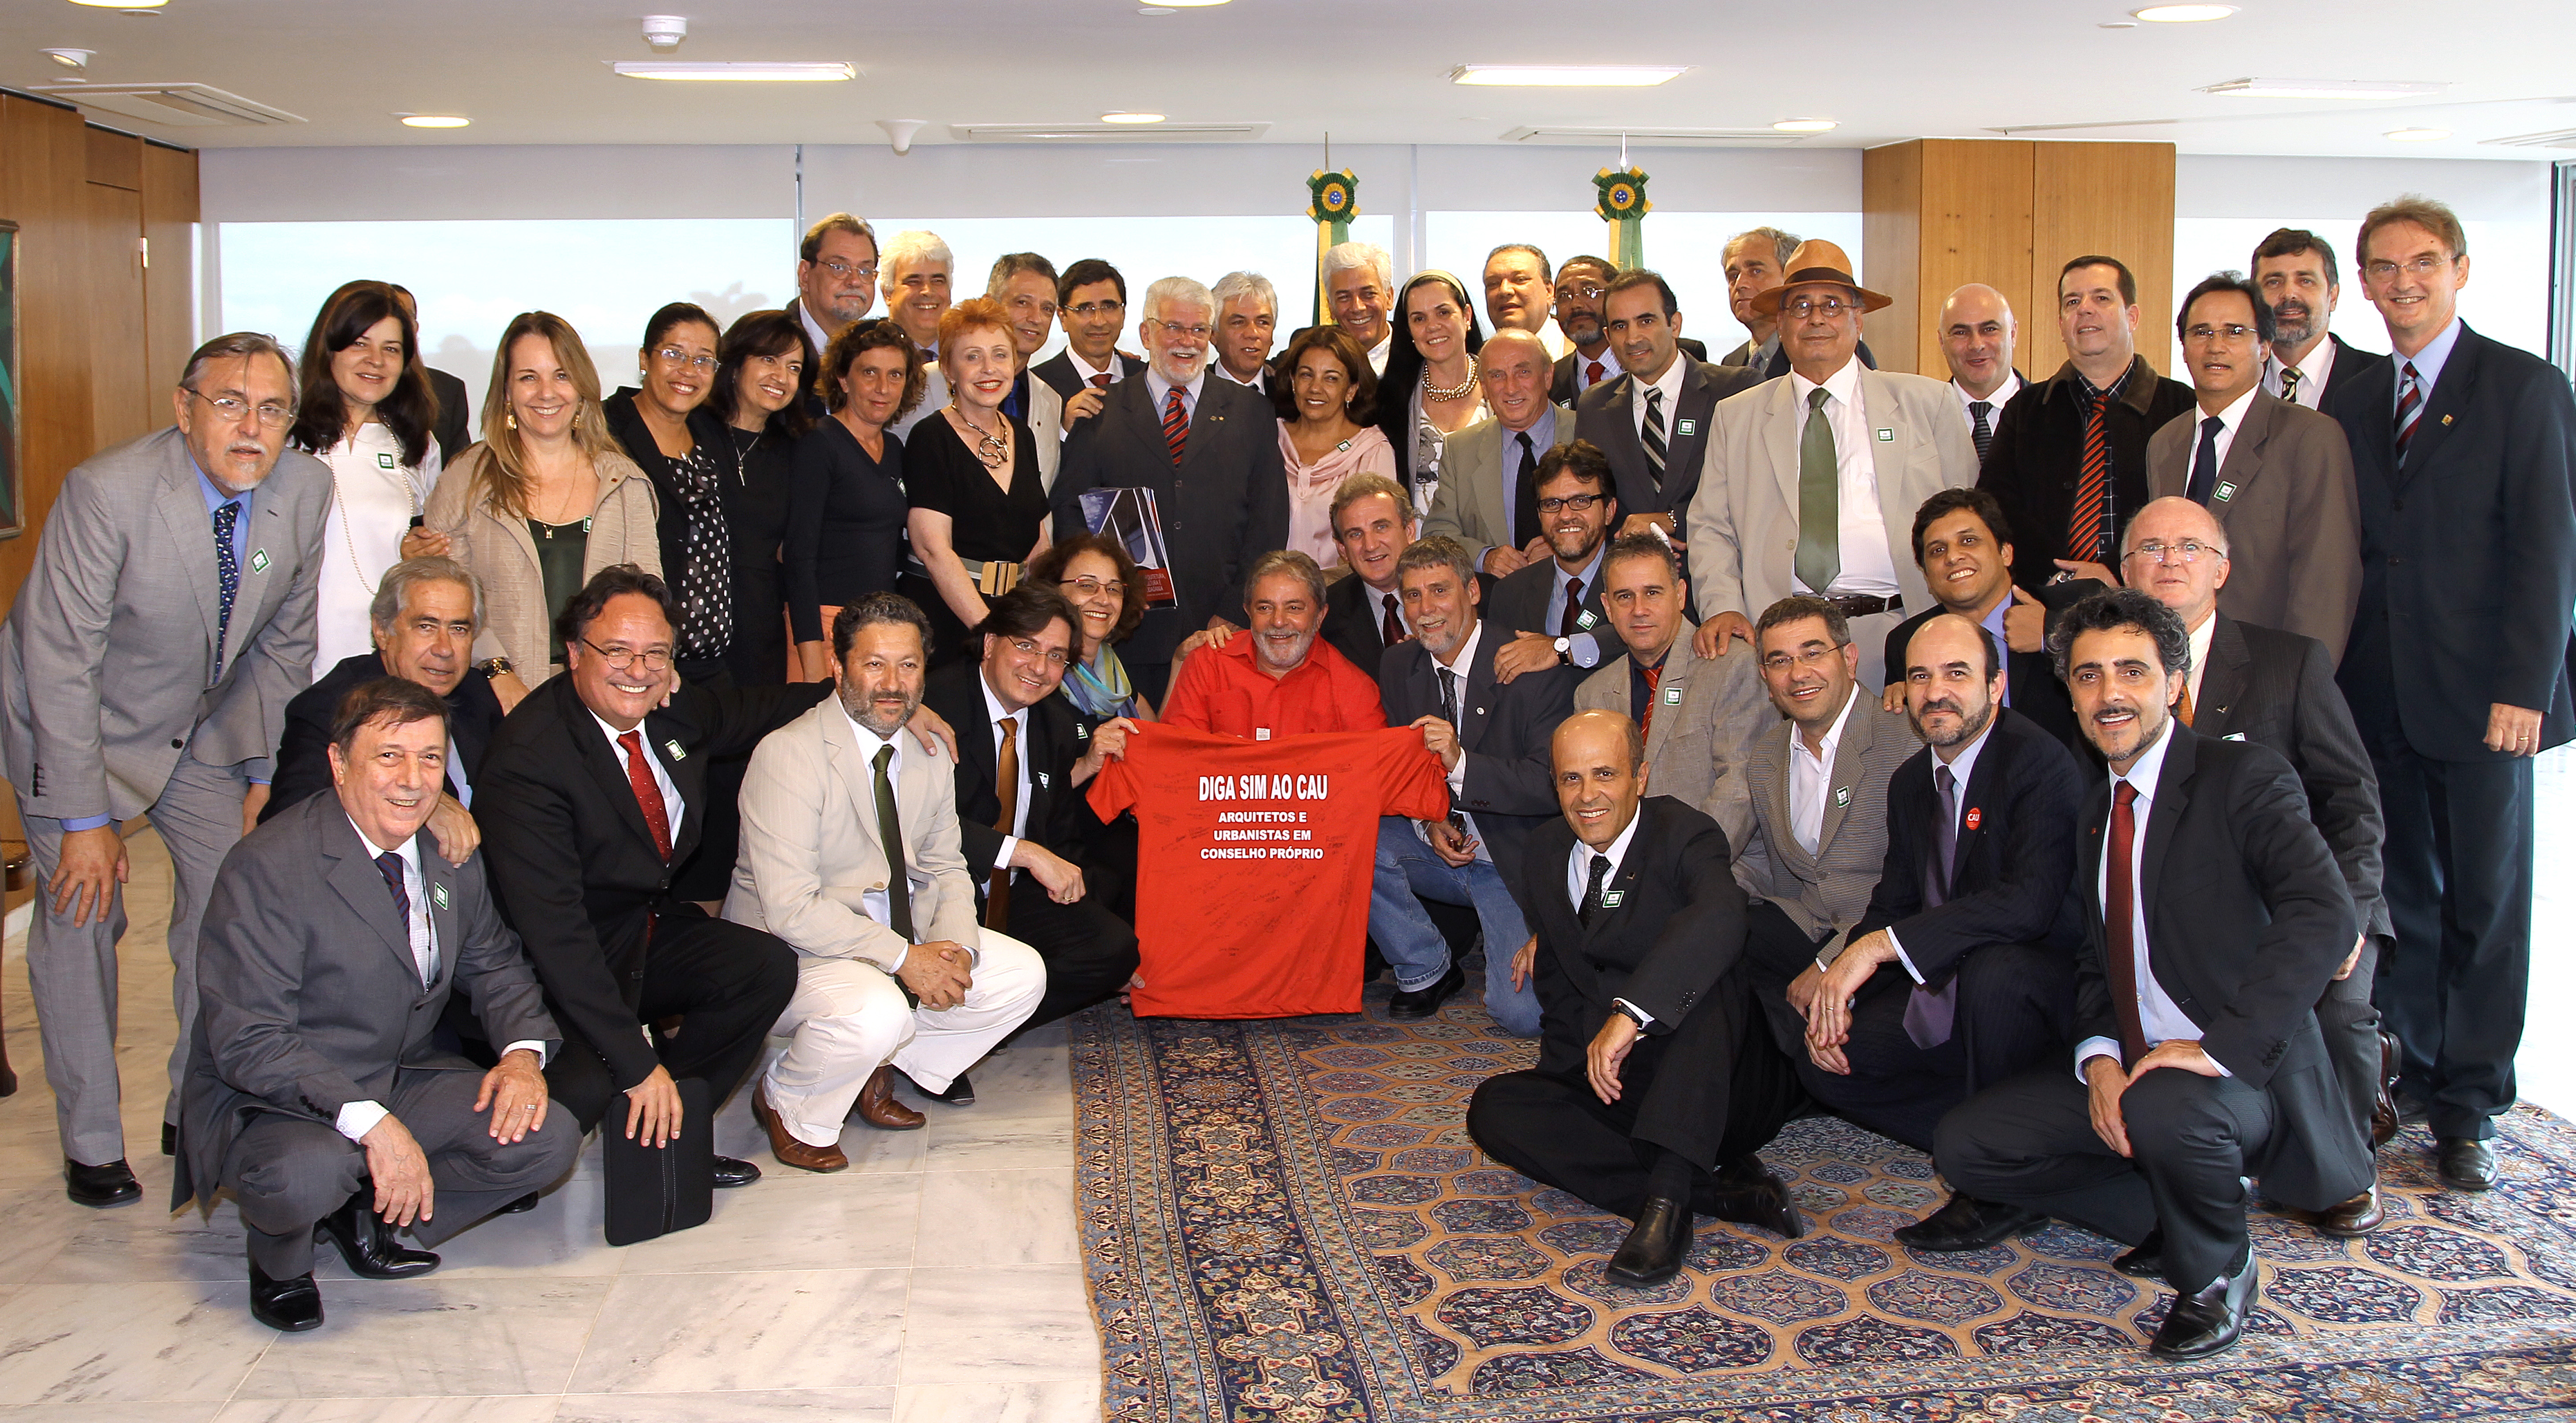 Presidente Lula durante encontro com representantes do Conselho de Arquitetura e Urbanismo (CAU)